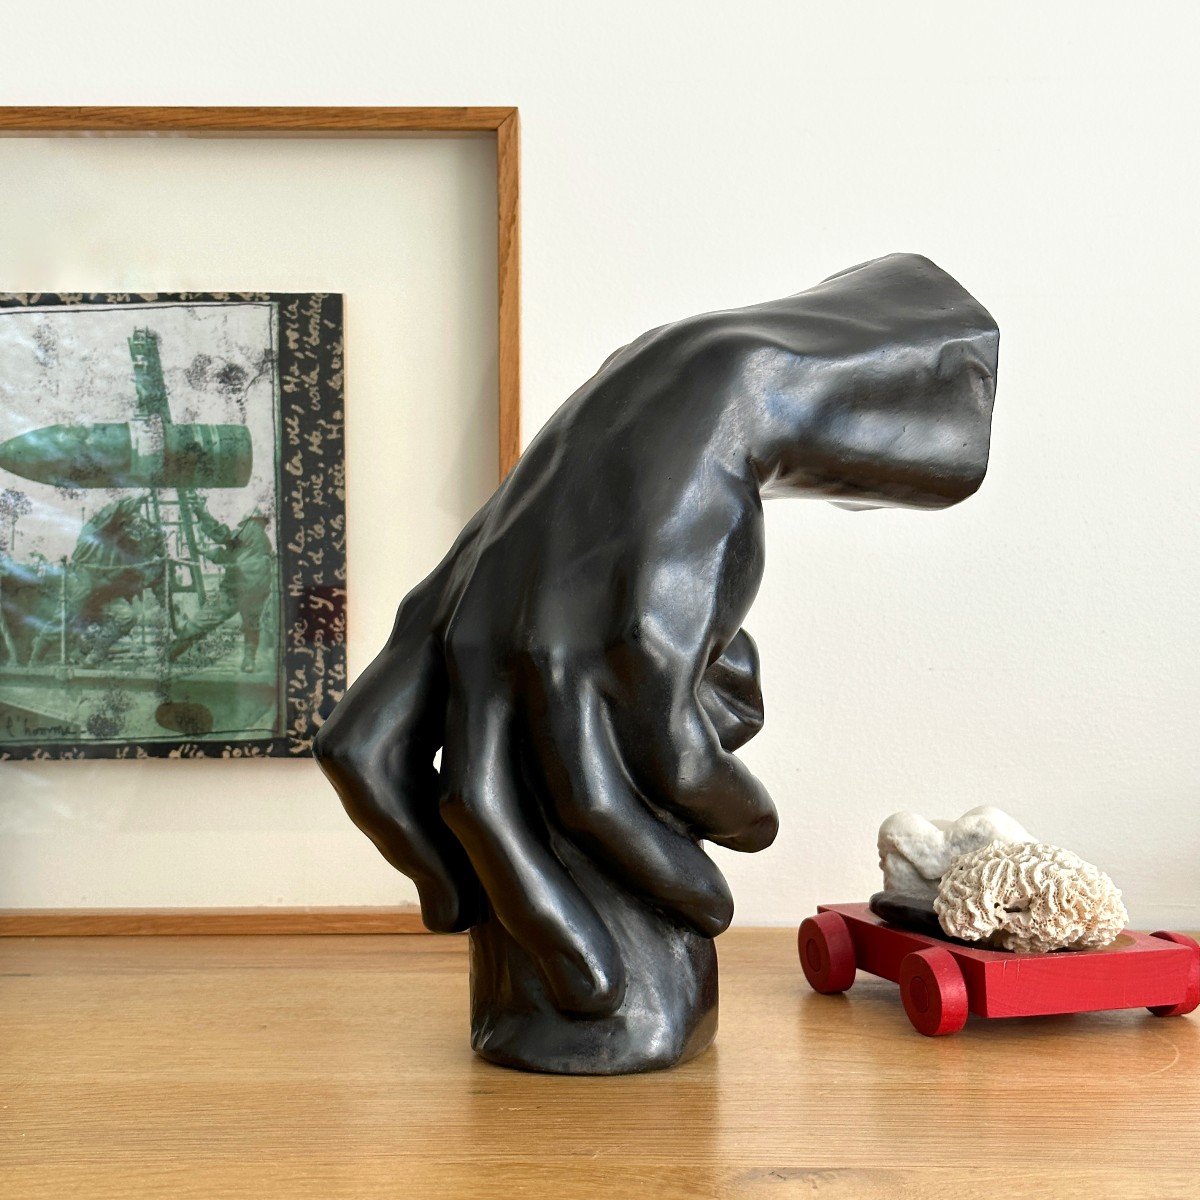 Etude de main - Dans le goût de Rodin